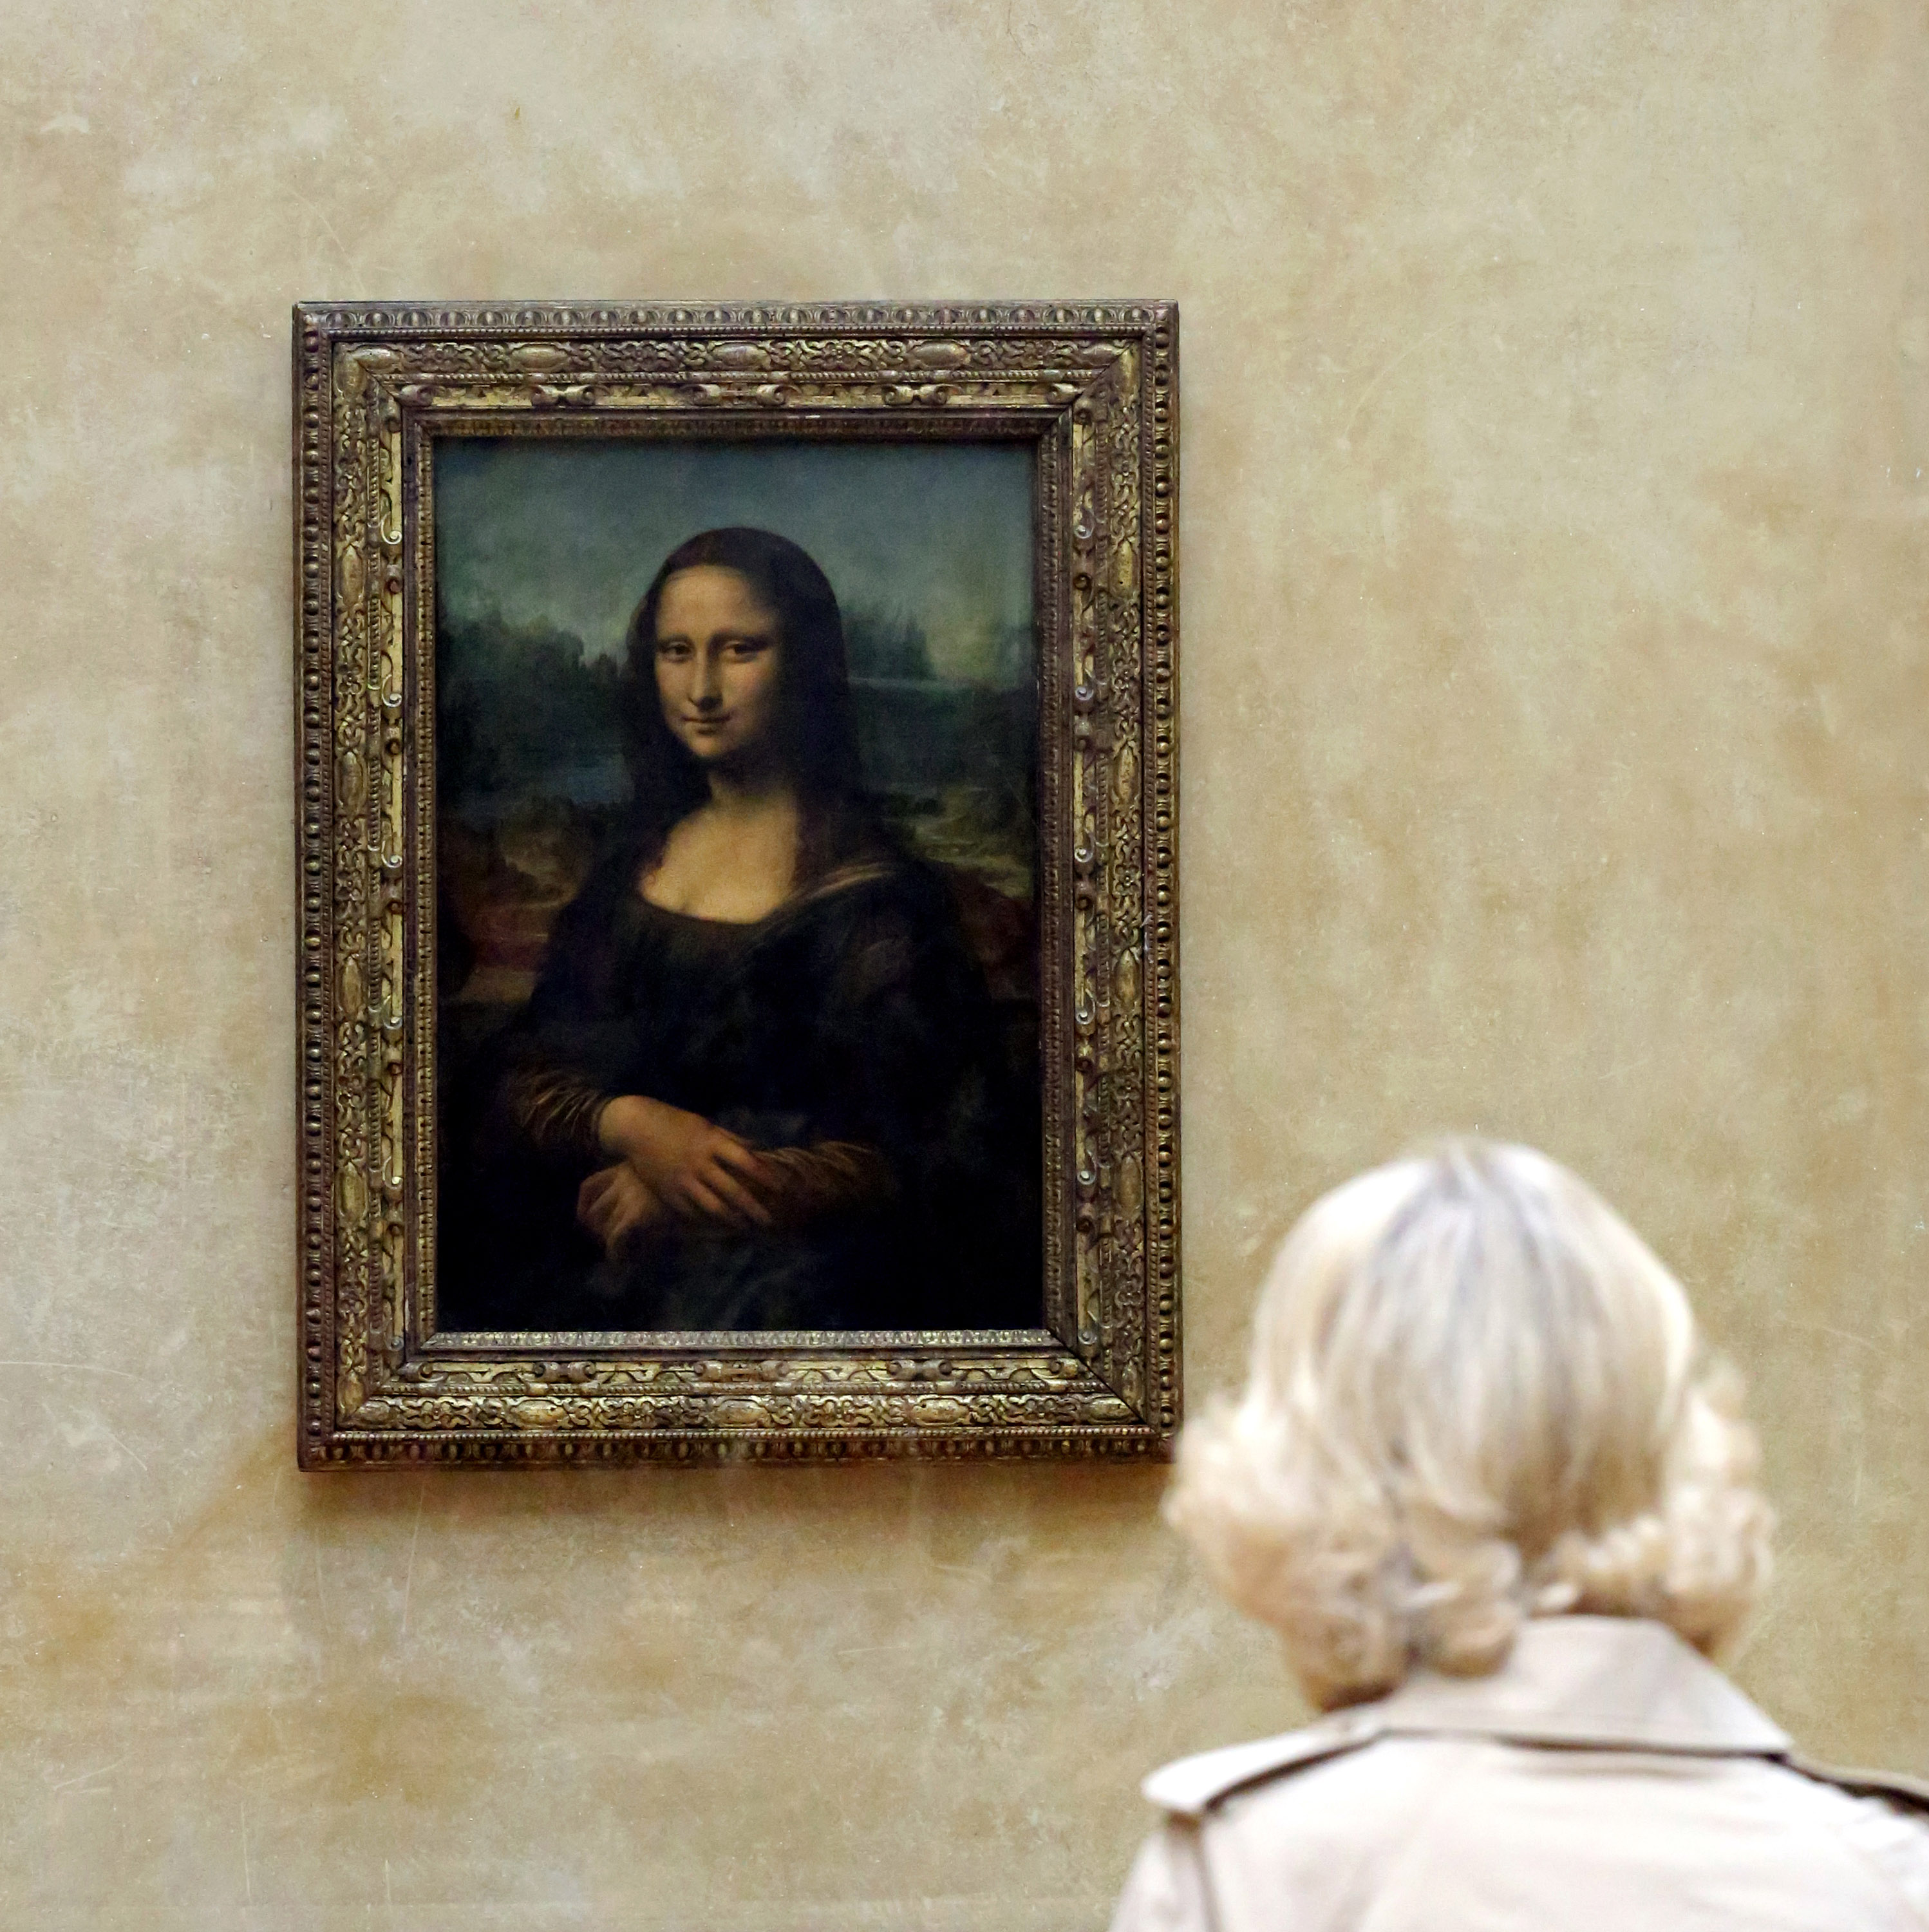 Original Mona Lisa In Museum